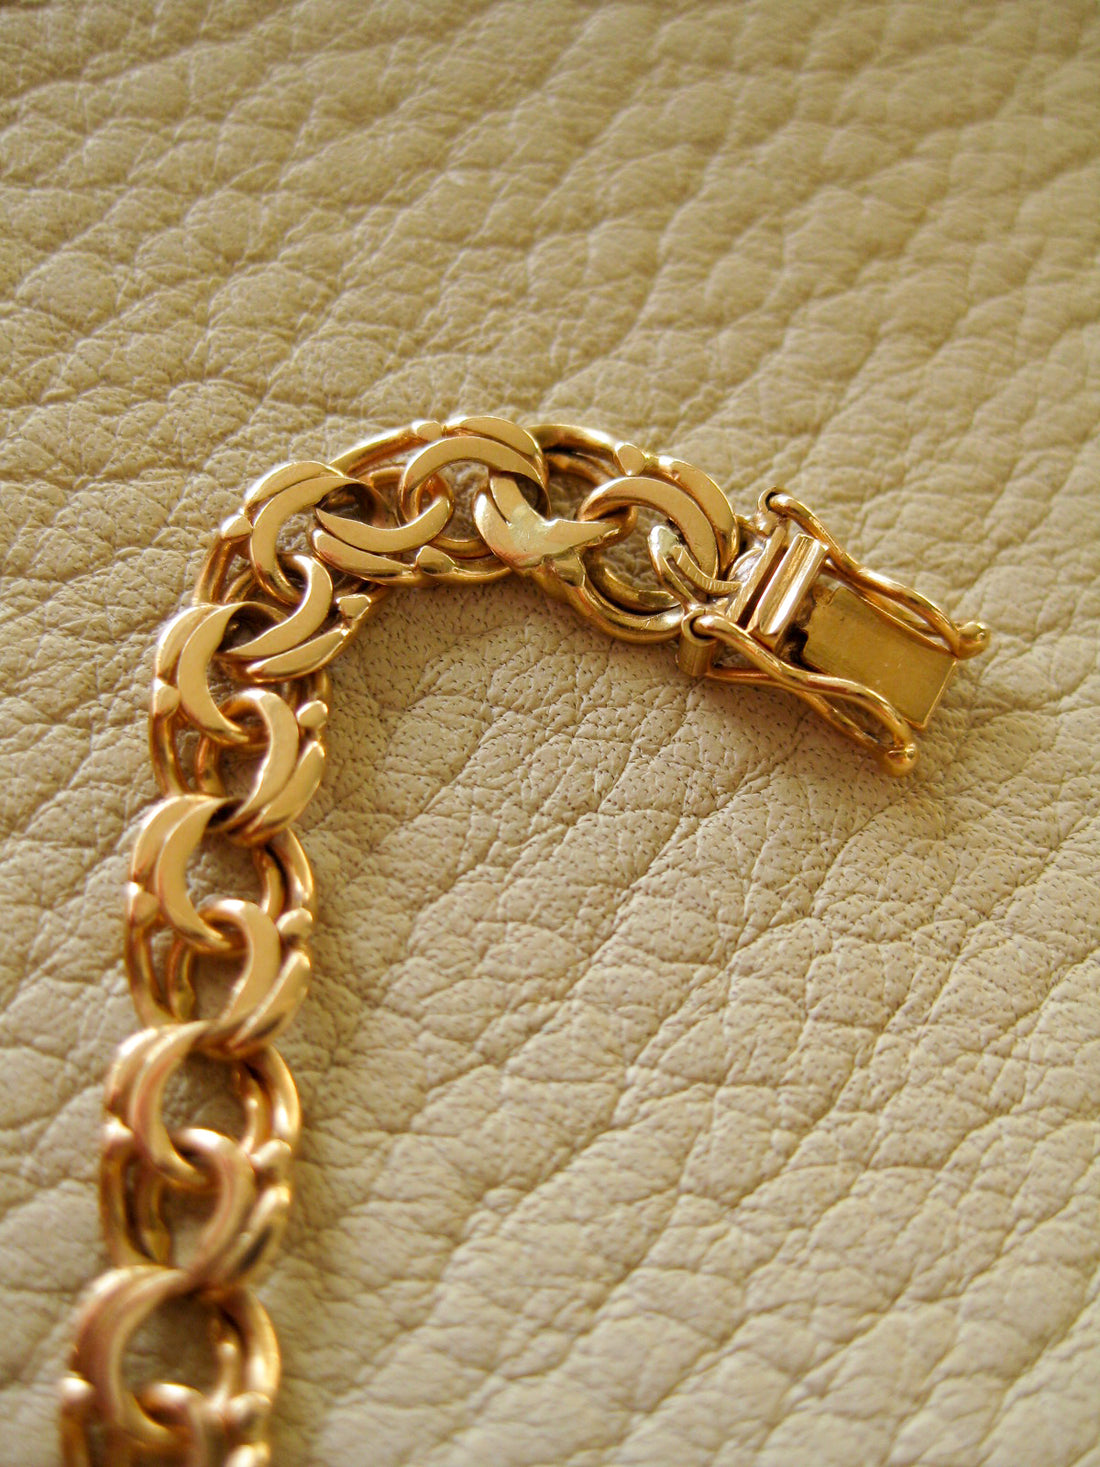 Delicate 18k double-link solid gold bracelet - Trelleborg, Sweden 1963